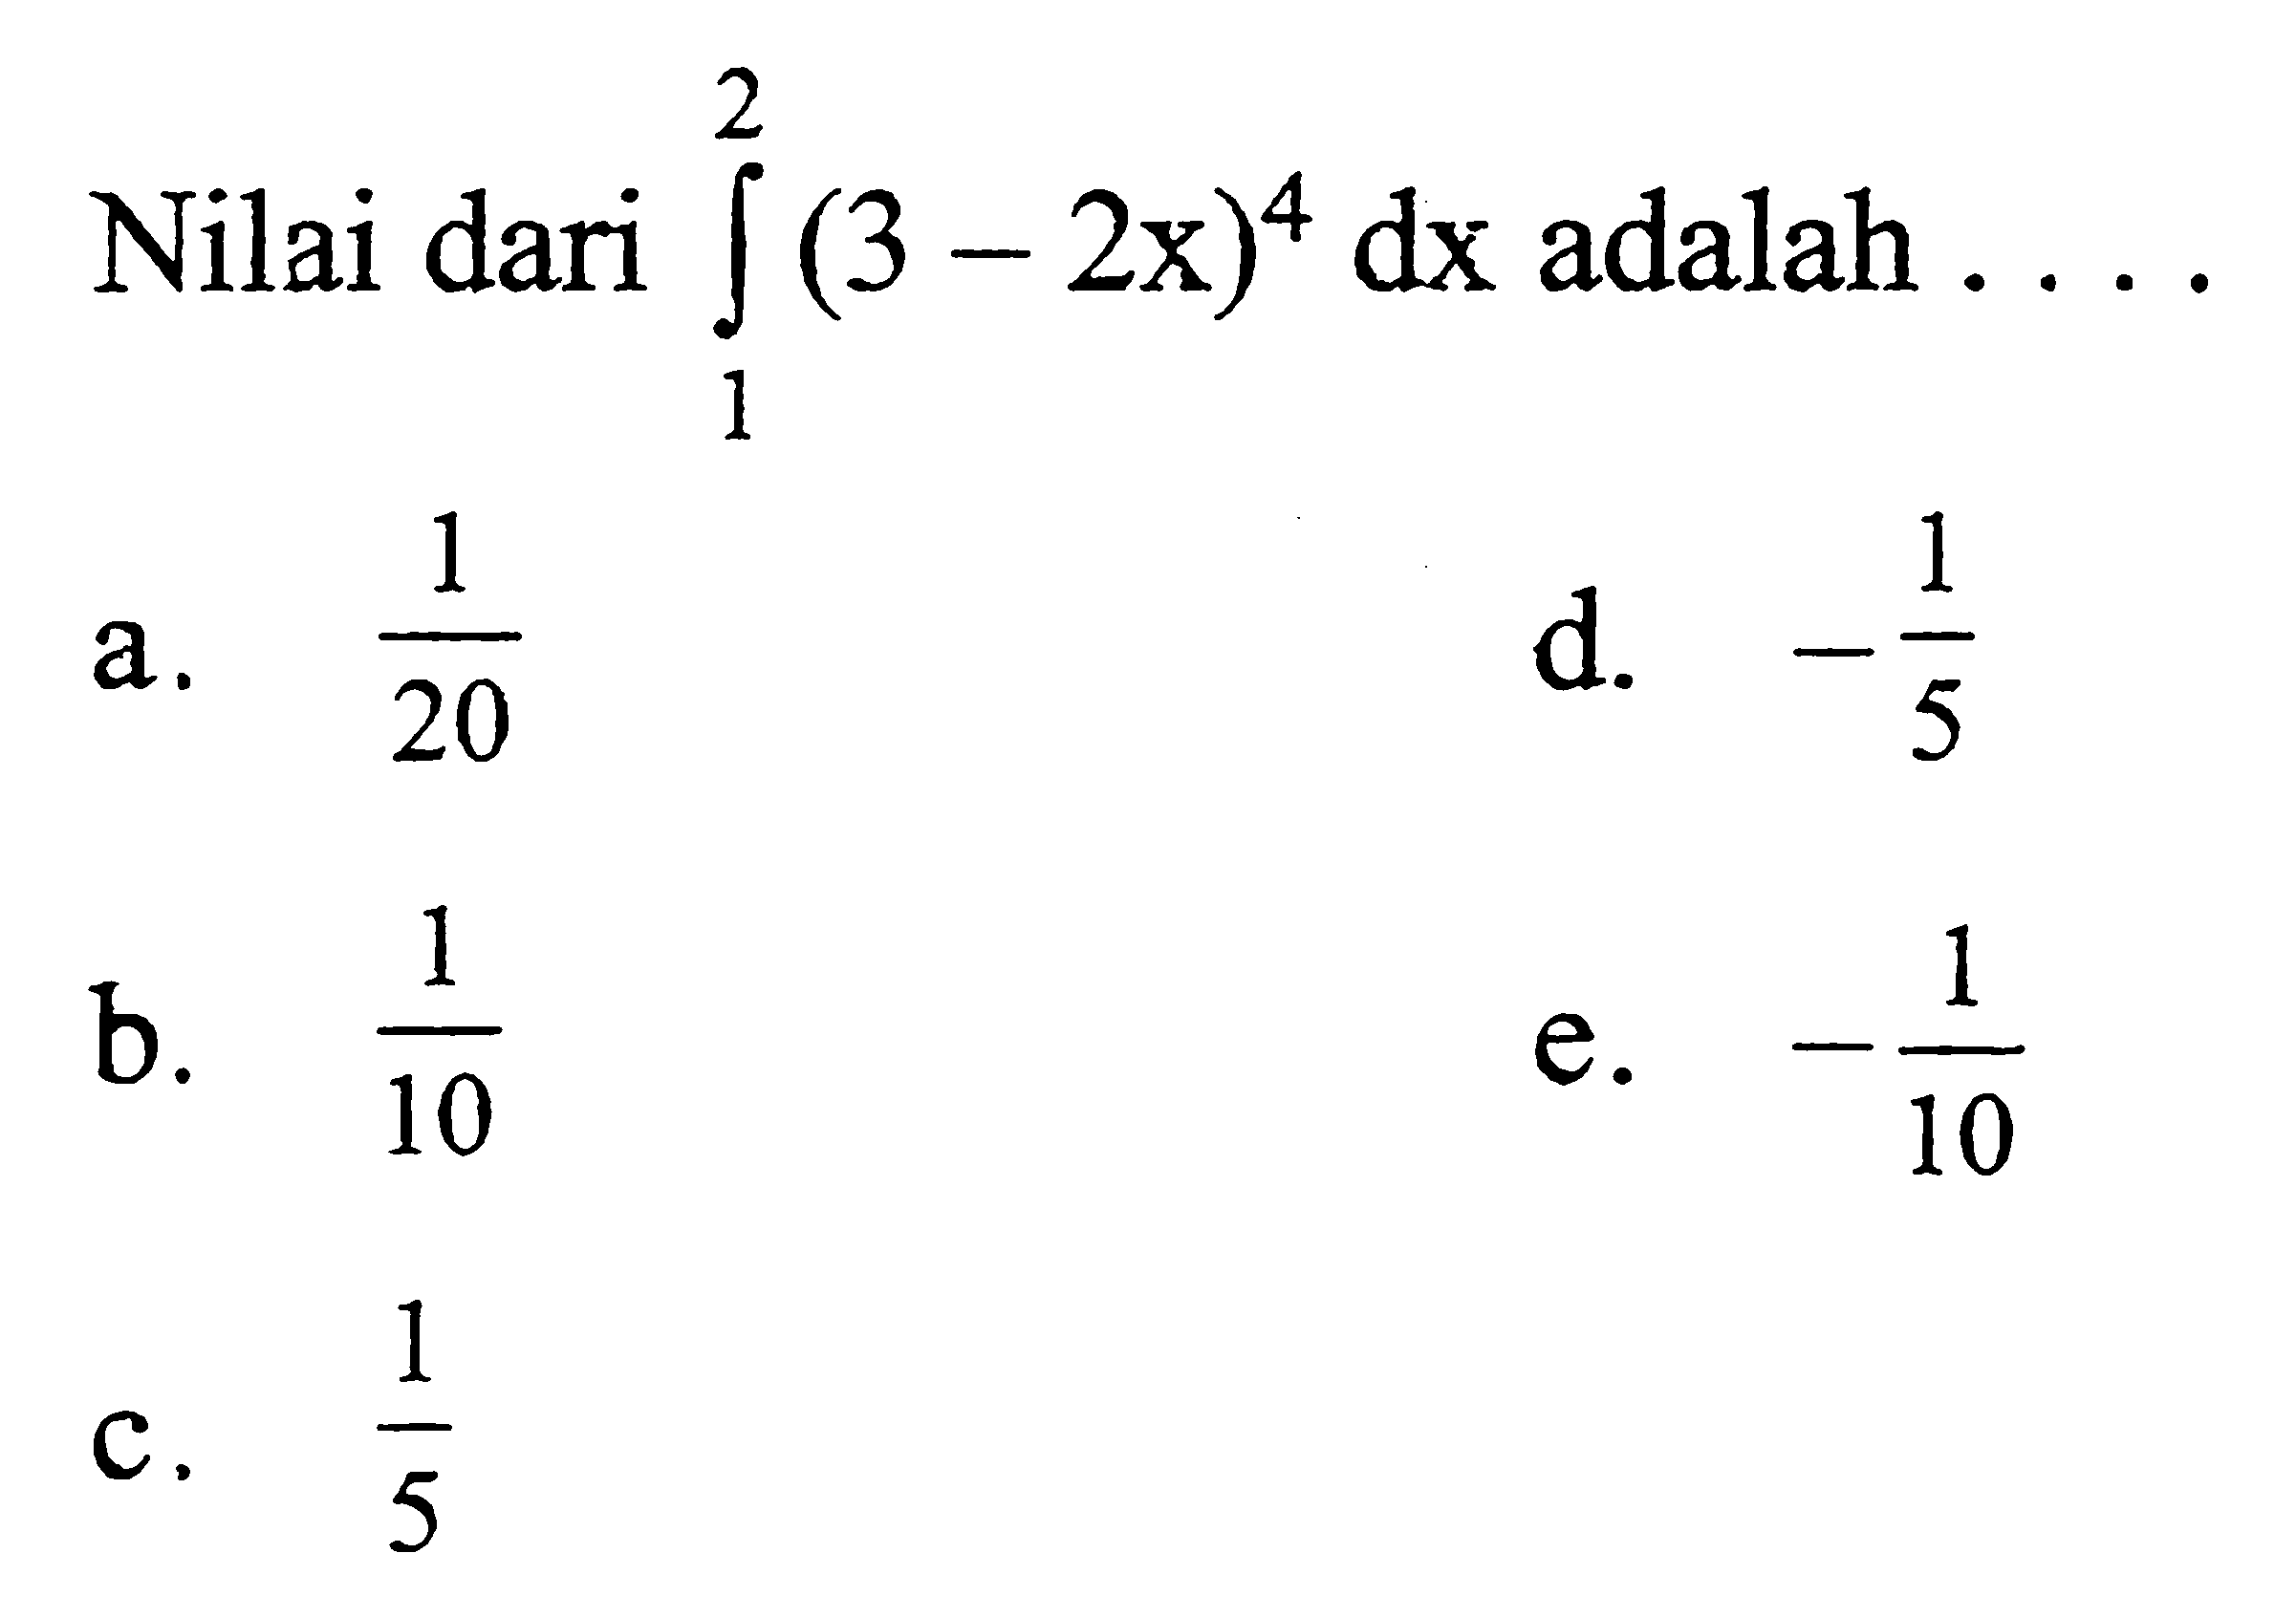 Nilai dari integral 1 2 (3-2x)^4 dx adalah ...